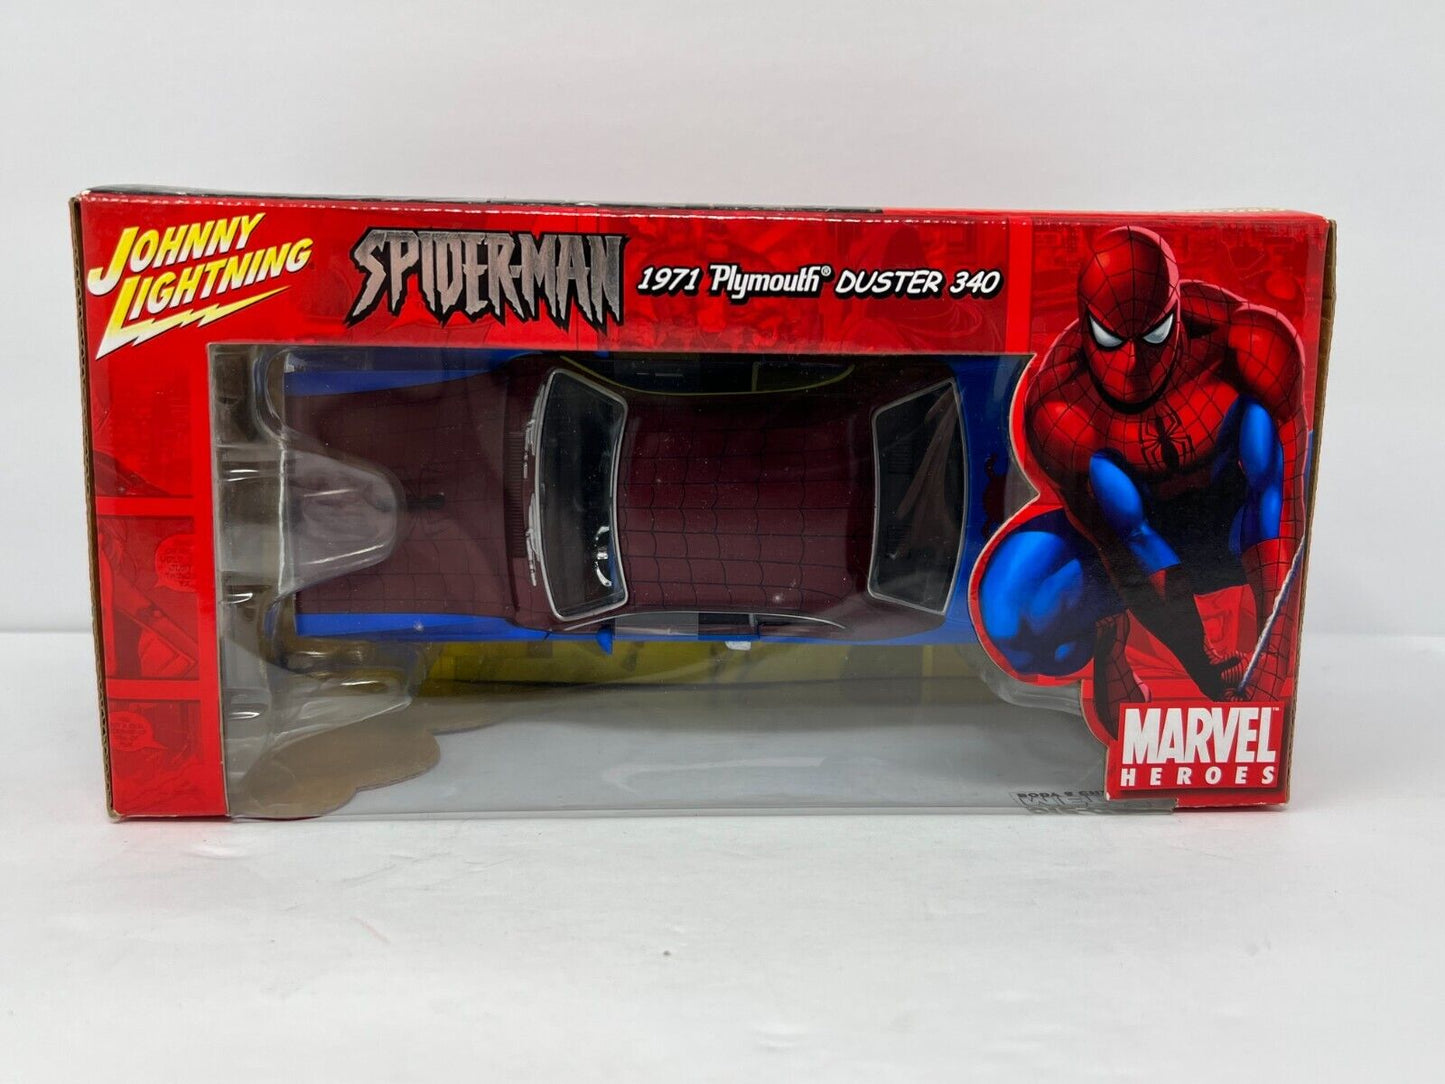 Johnny Lightning Marvel Spider-Man 1971 Plymouth Duster 340 1:24 Diecast